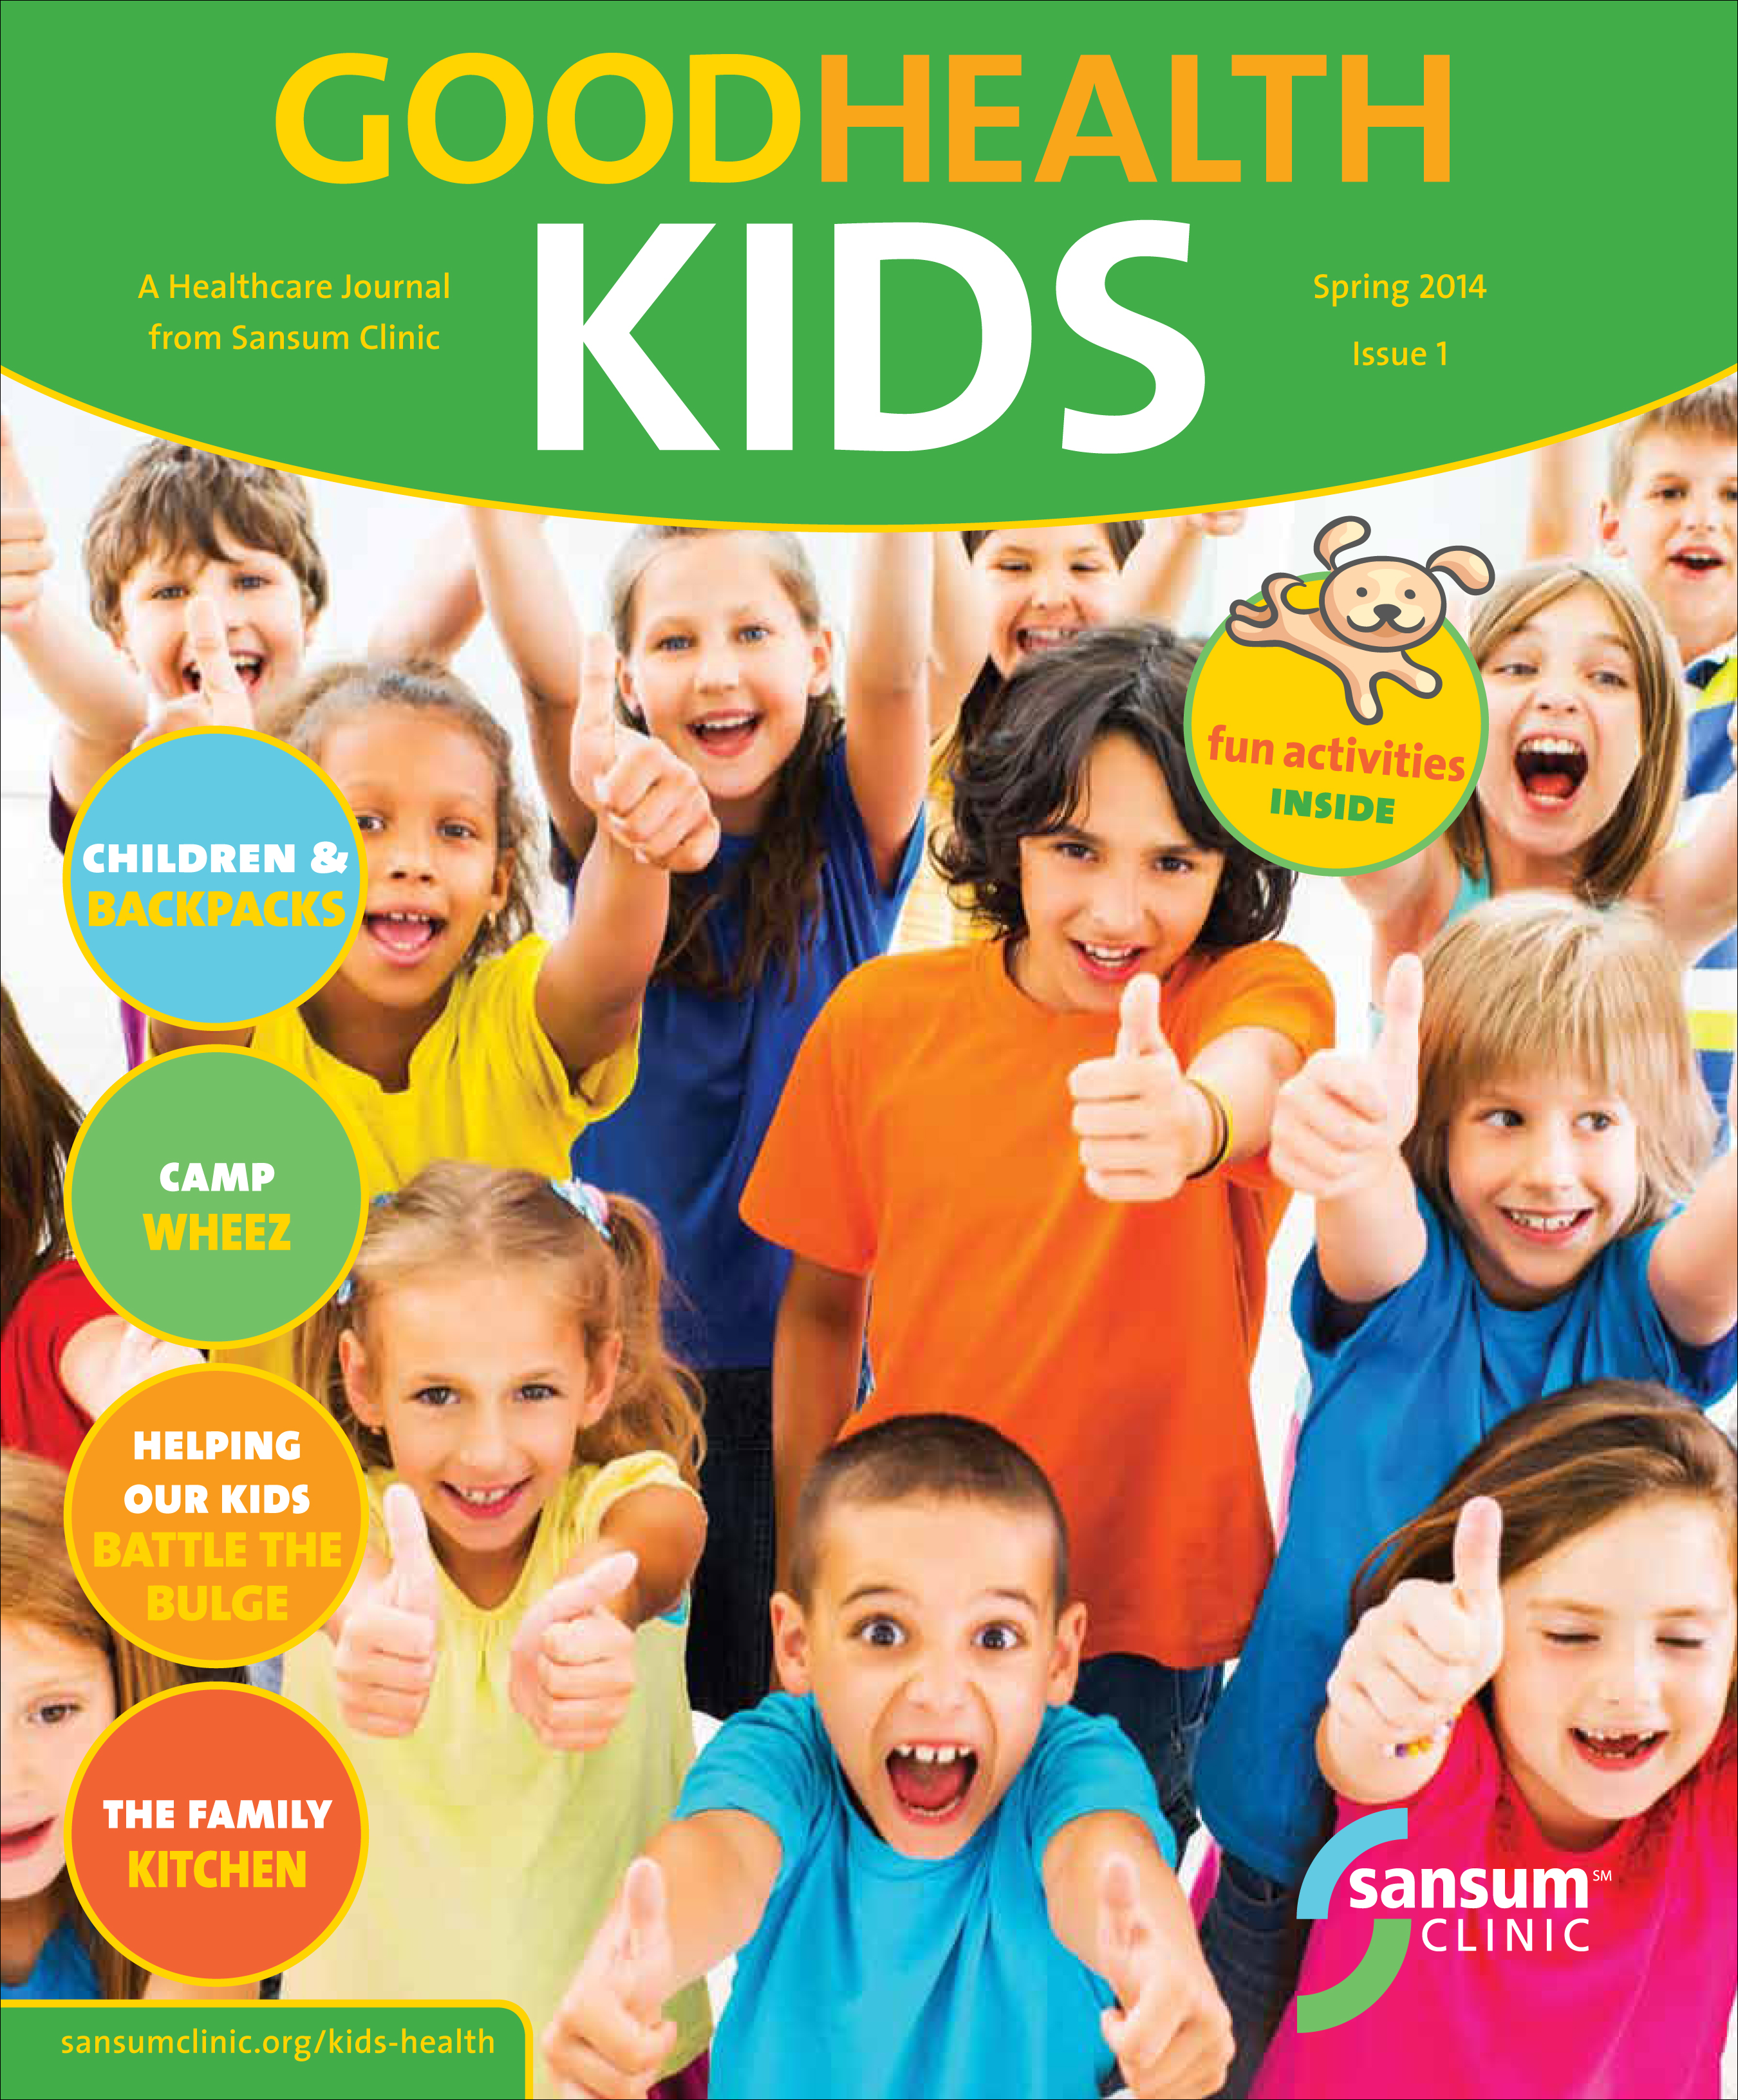 Good Health Kids Magazine Issue 1 Spring 2014